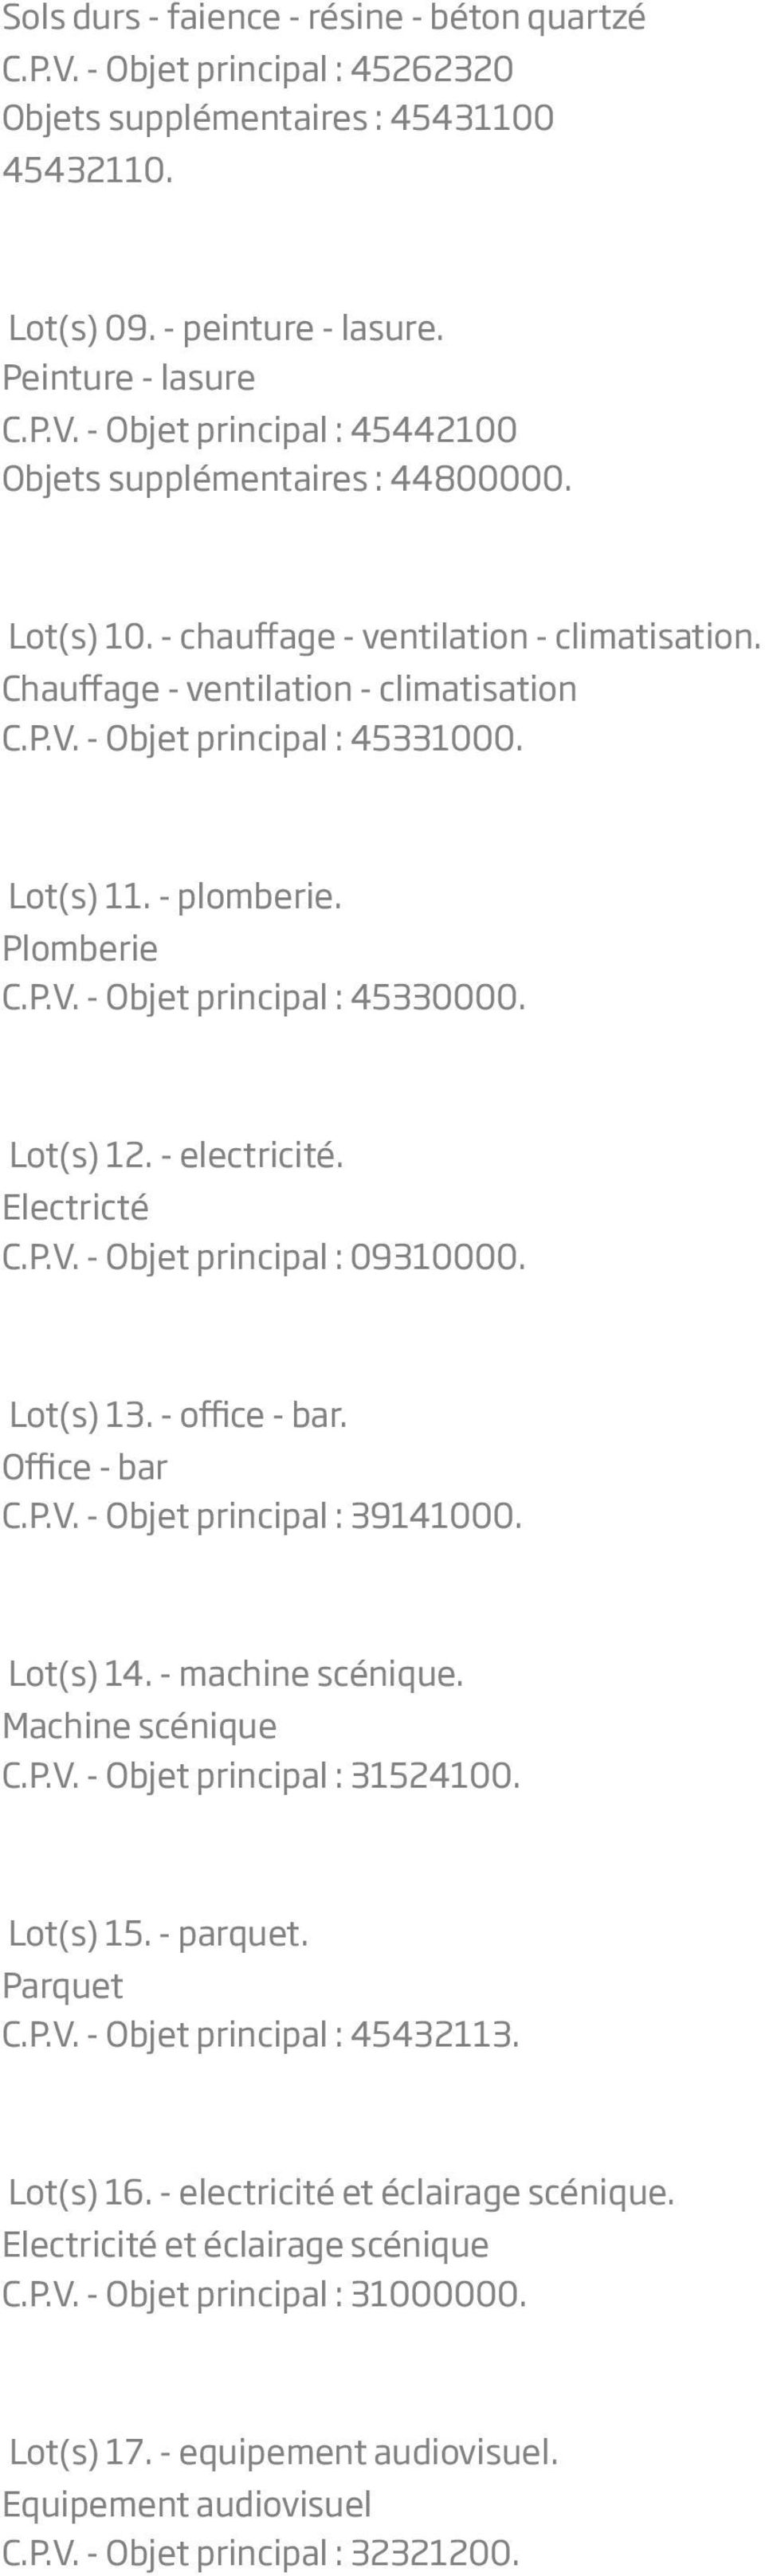 Lot(s) 12. - electricité. Electricté C.P.V. - Objet principal : 09310000. Lot(s) 13. - office - bar. Office - bar C.P.V. - Objet principal : 39141000. Lot(s) 14. - machine scénique.